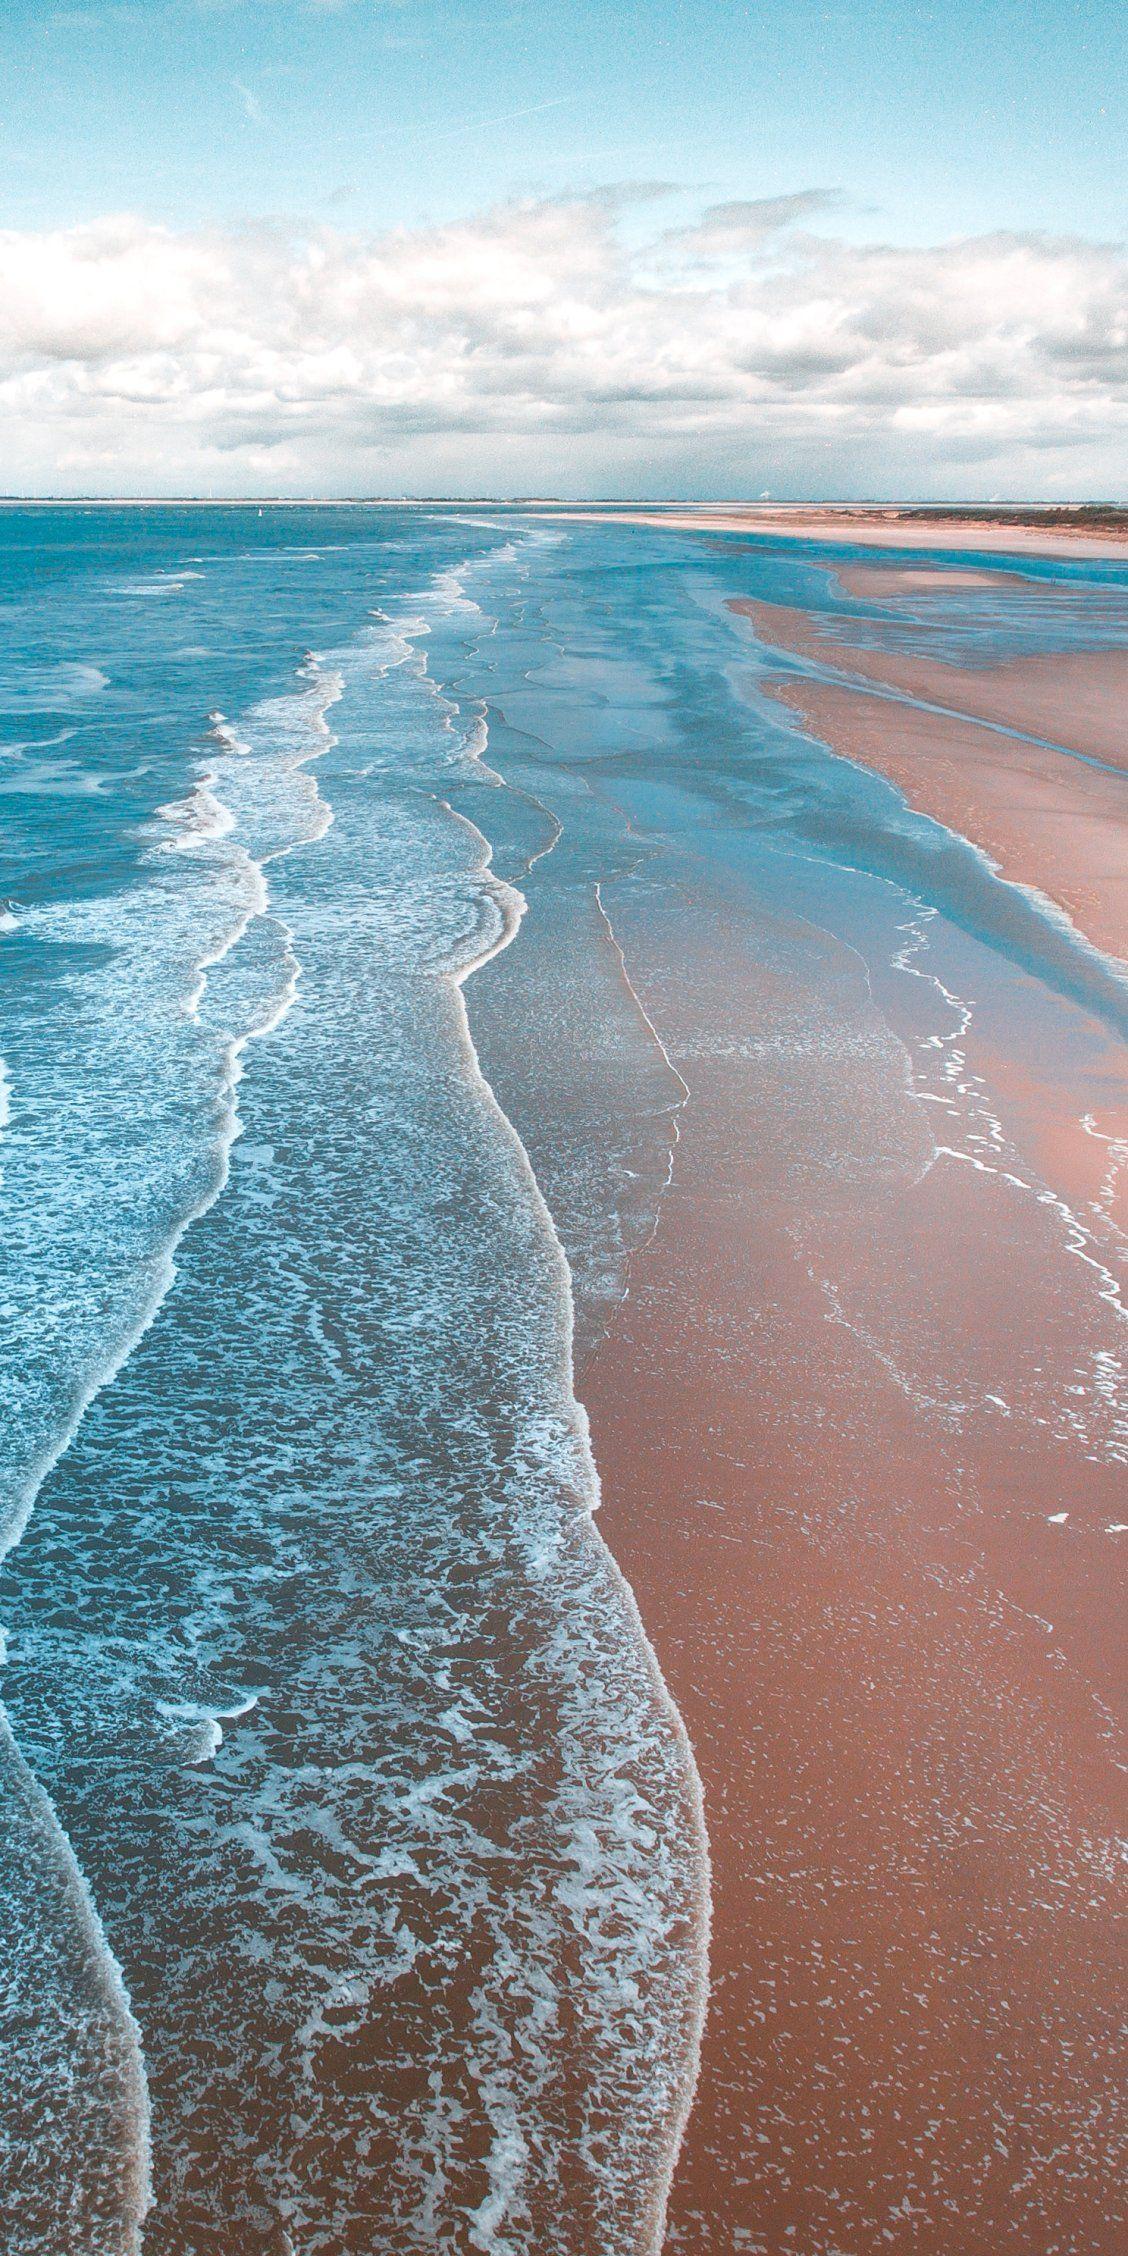 Bridgetown, Barbados. Pink sand beaches. Turquoise shores